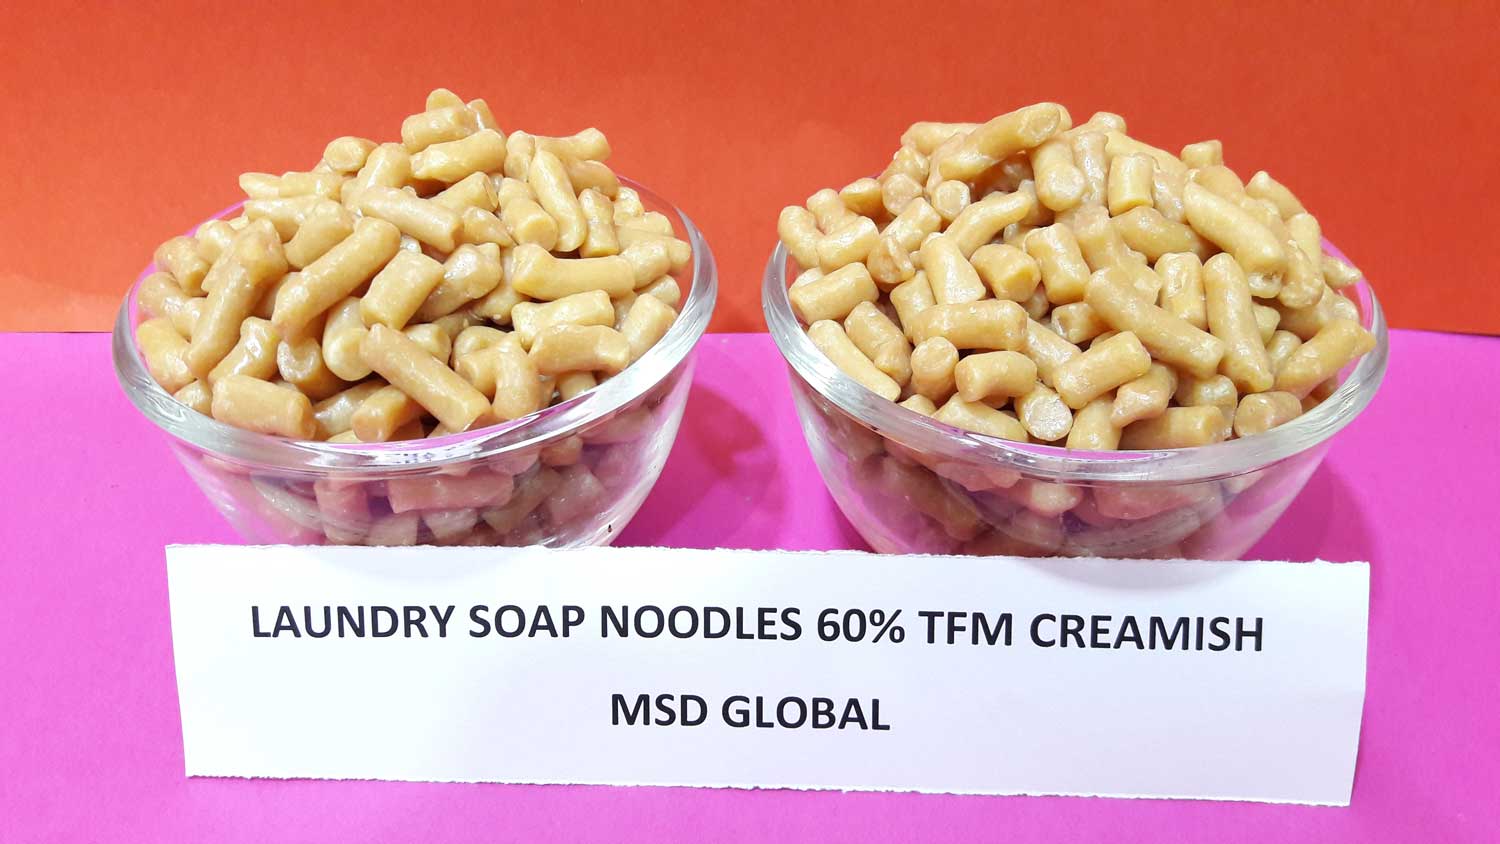 Laundry soap noodles 60 TFM creamish